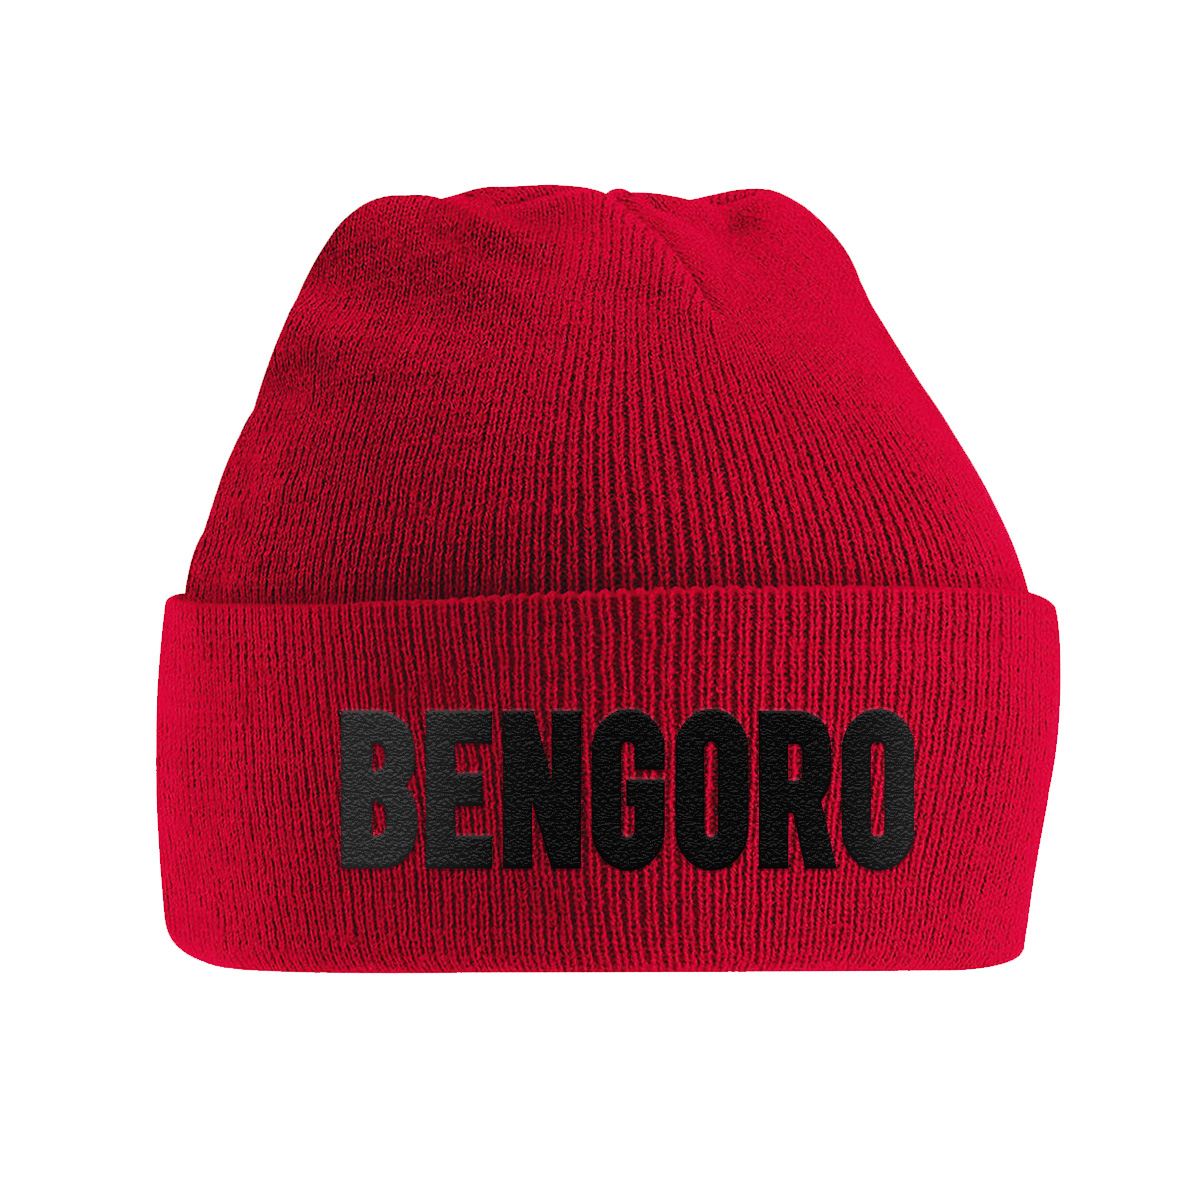 E-shop Bengoro